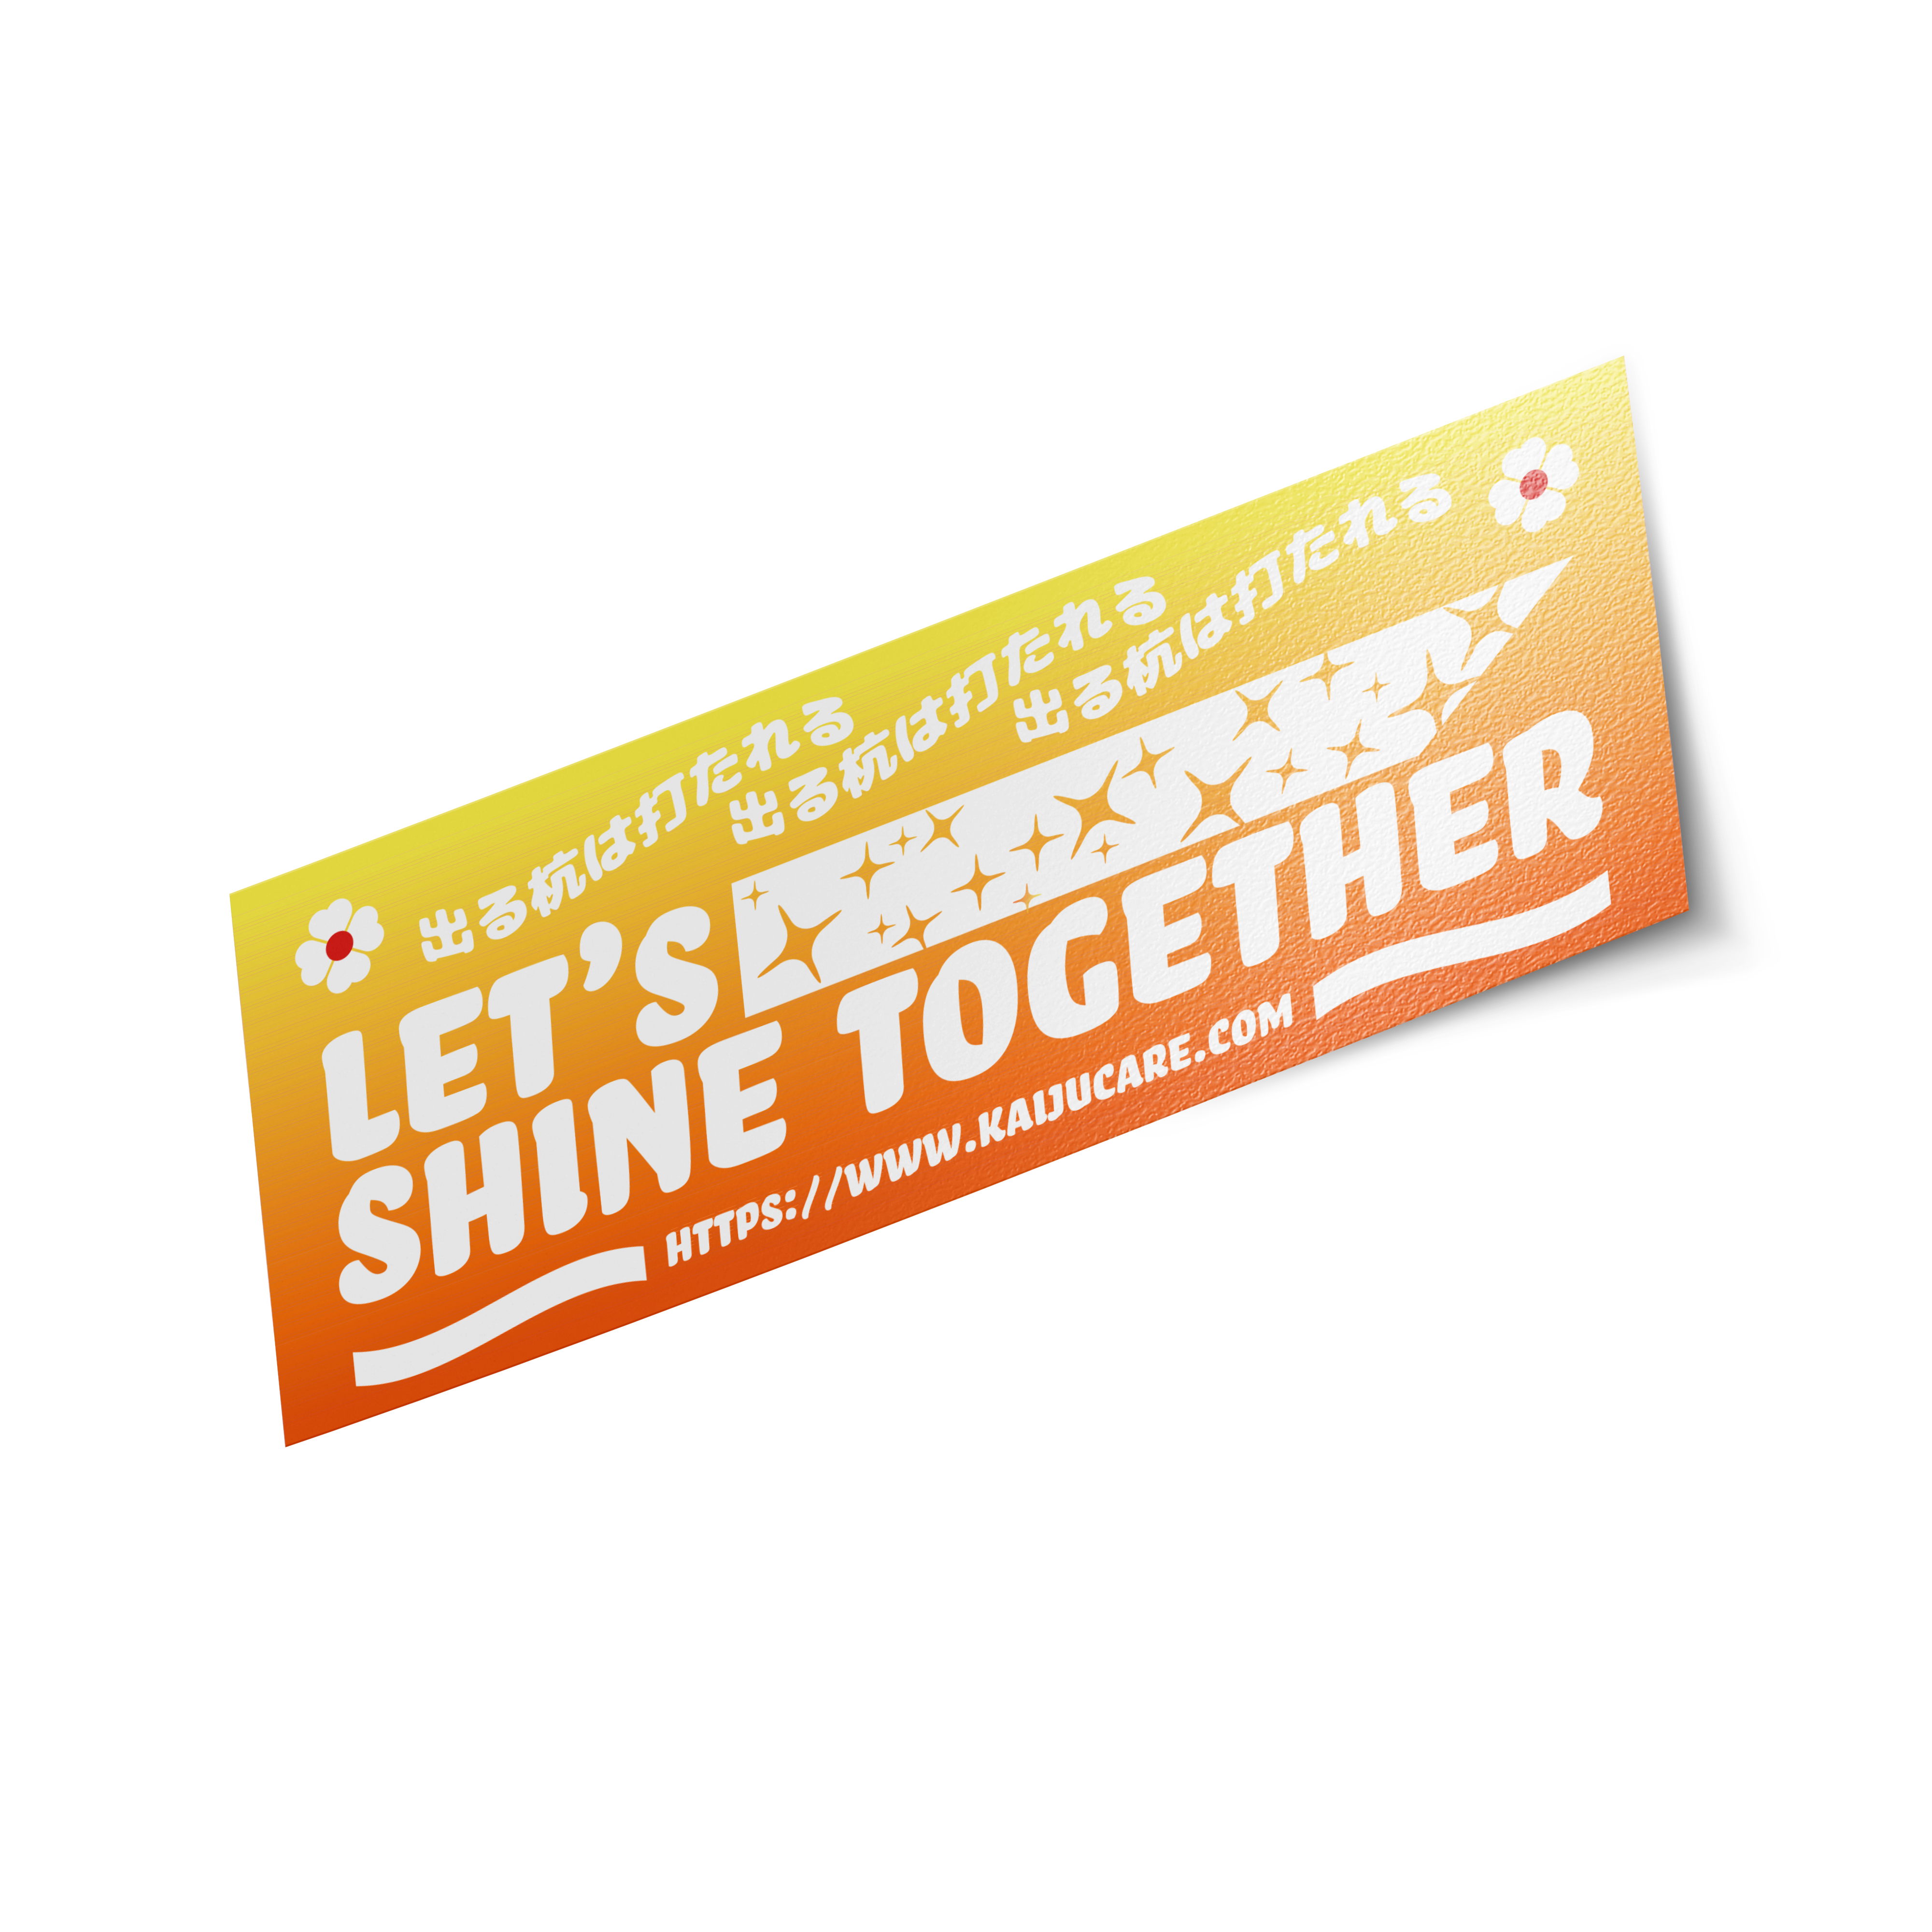 Lets Shine together! - Sunset